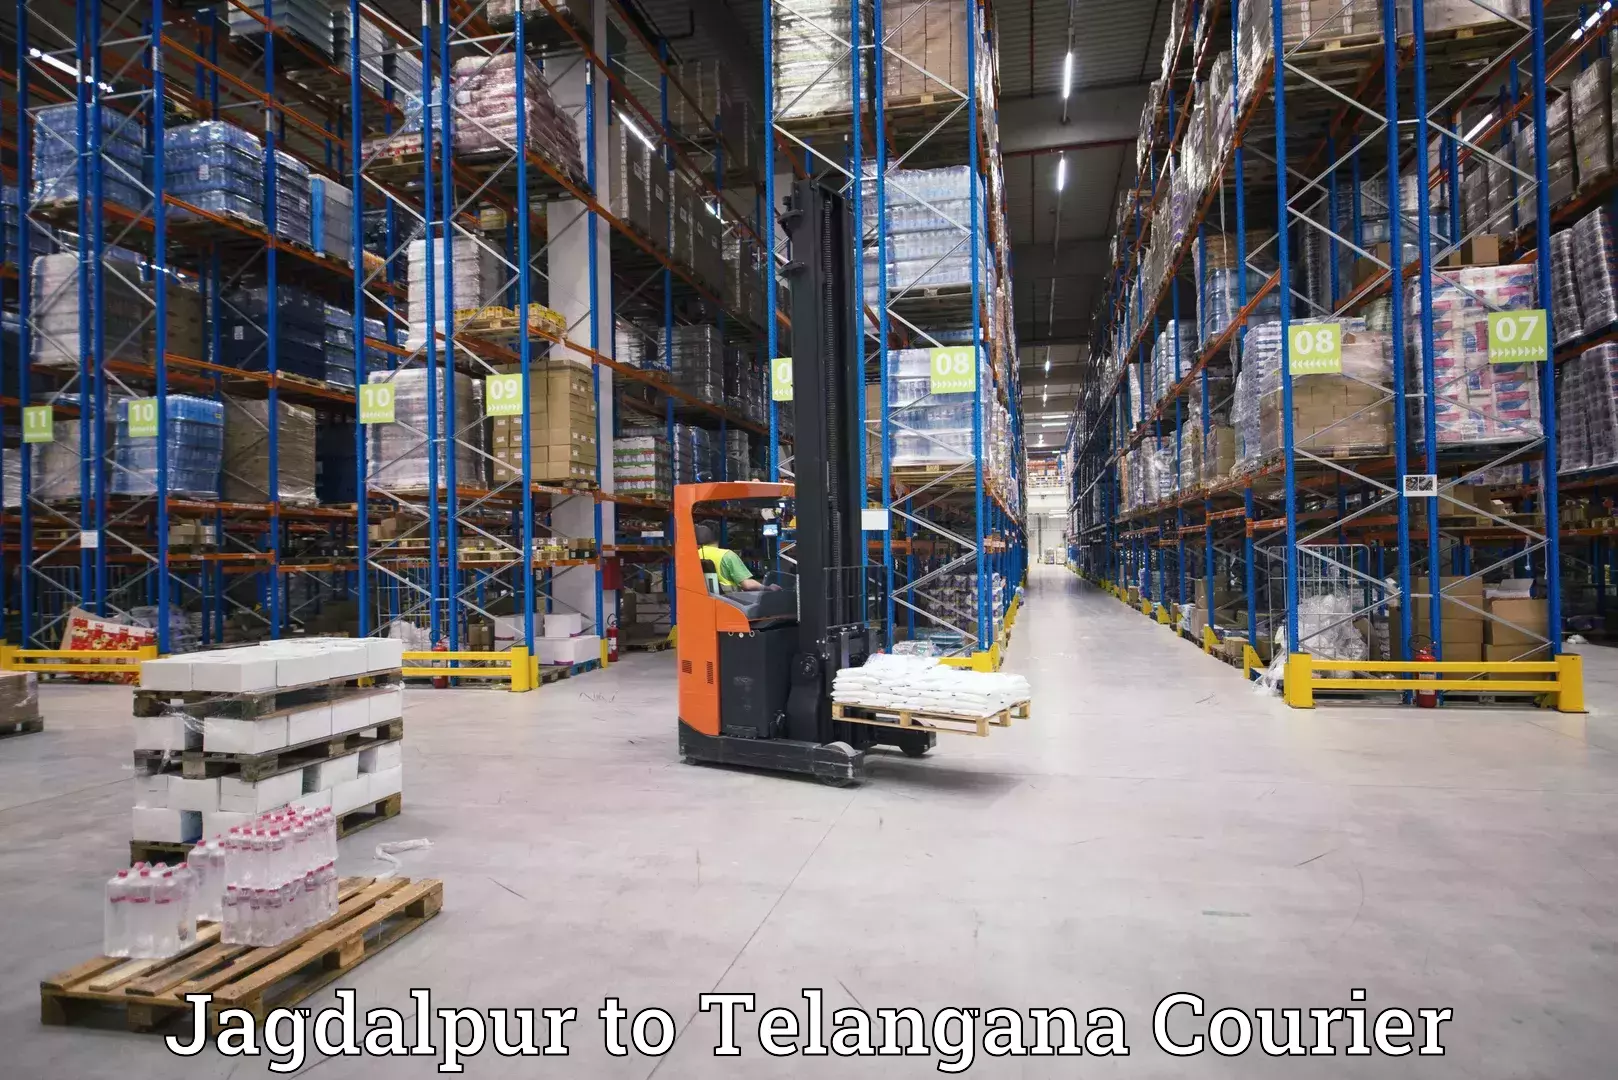 Cargo delivery service Jagdalpur to Makthal